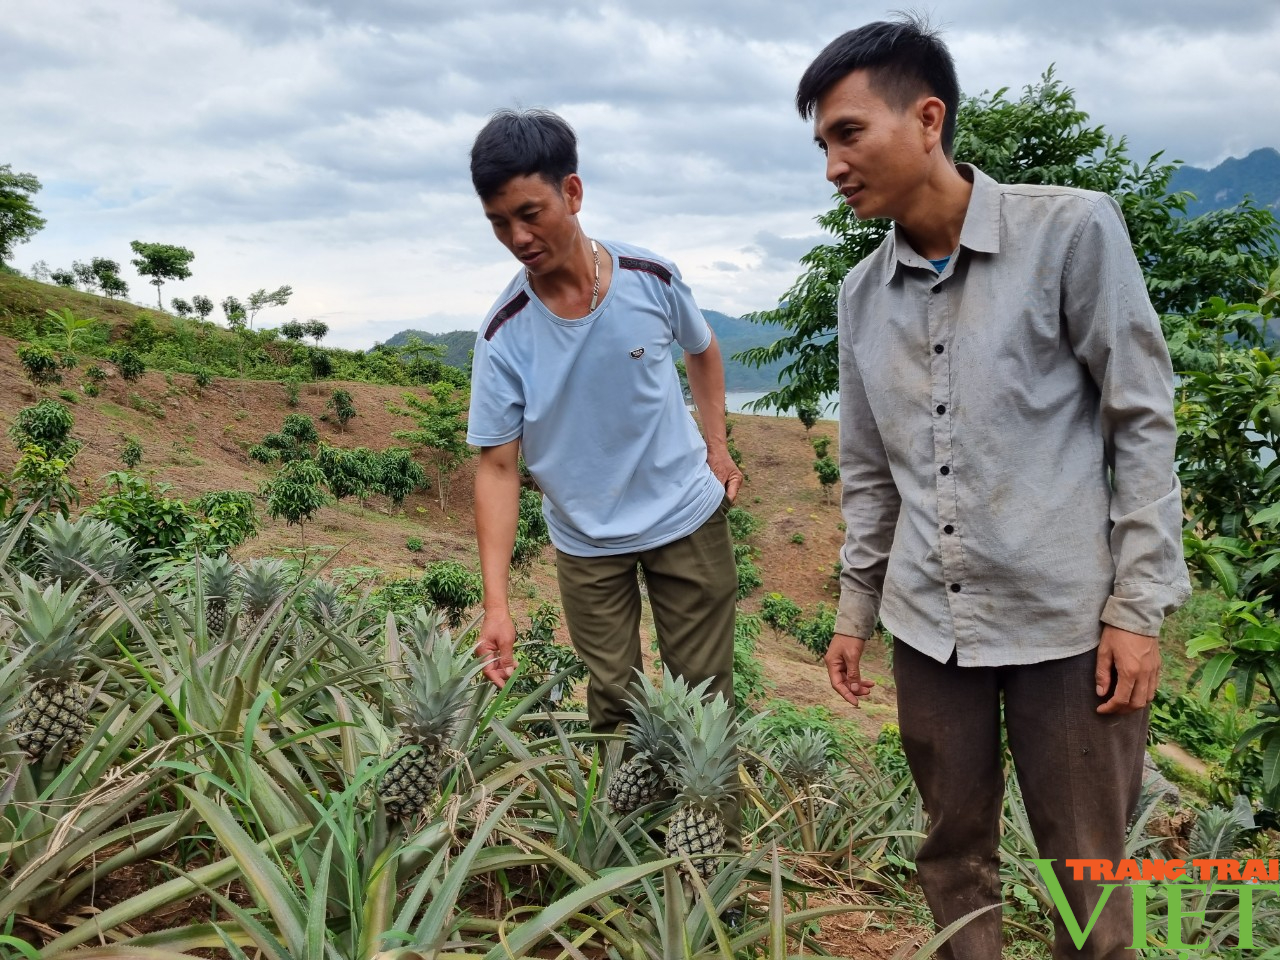 Liên kết trồng dứa với Công ty Đồng Giao, nông dân Quỳnh Nhai yên tâm sản xuất, không lo đầu ra - Ảnh 4.